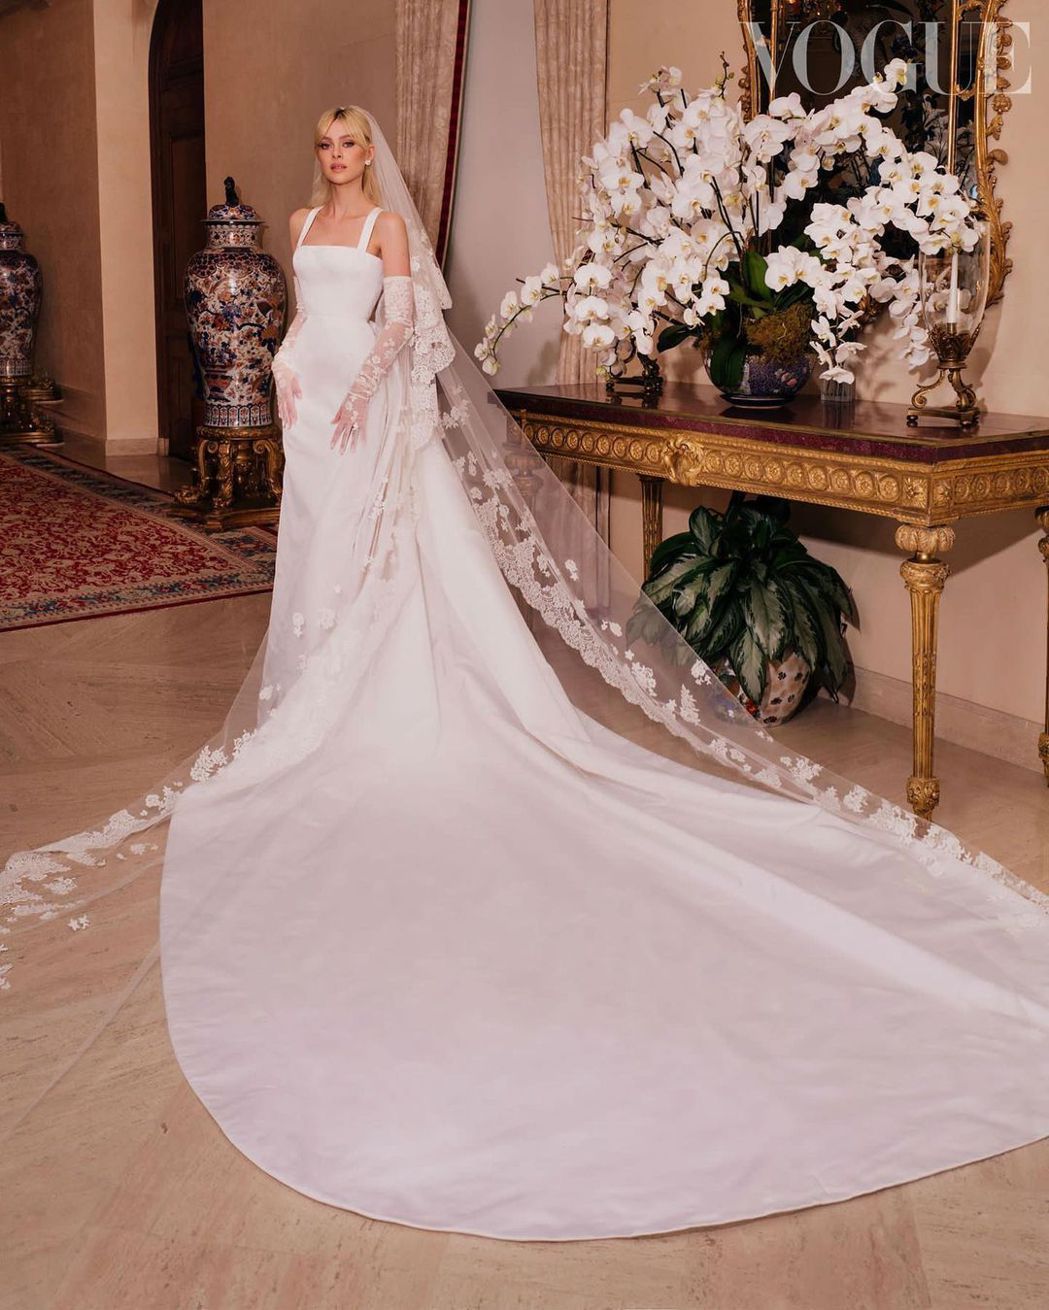 「世纪婚礼」婚纱照美如童话贝克汉家喜迎亿万媳妇